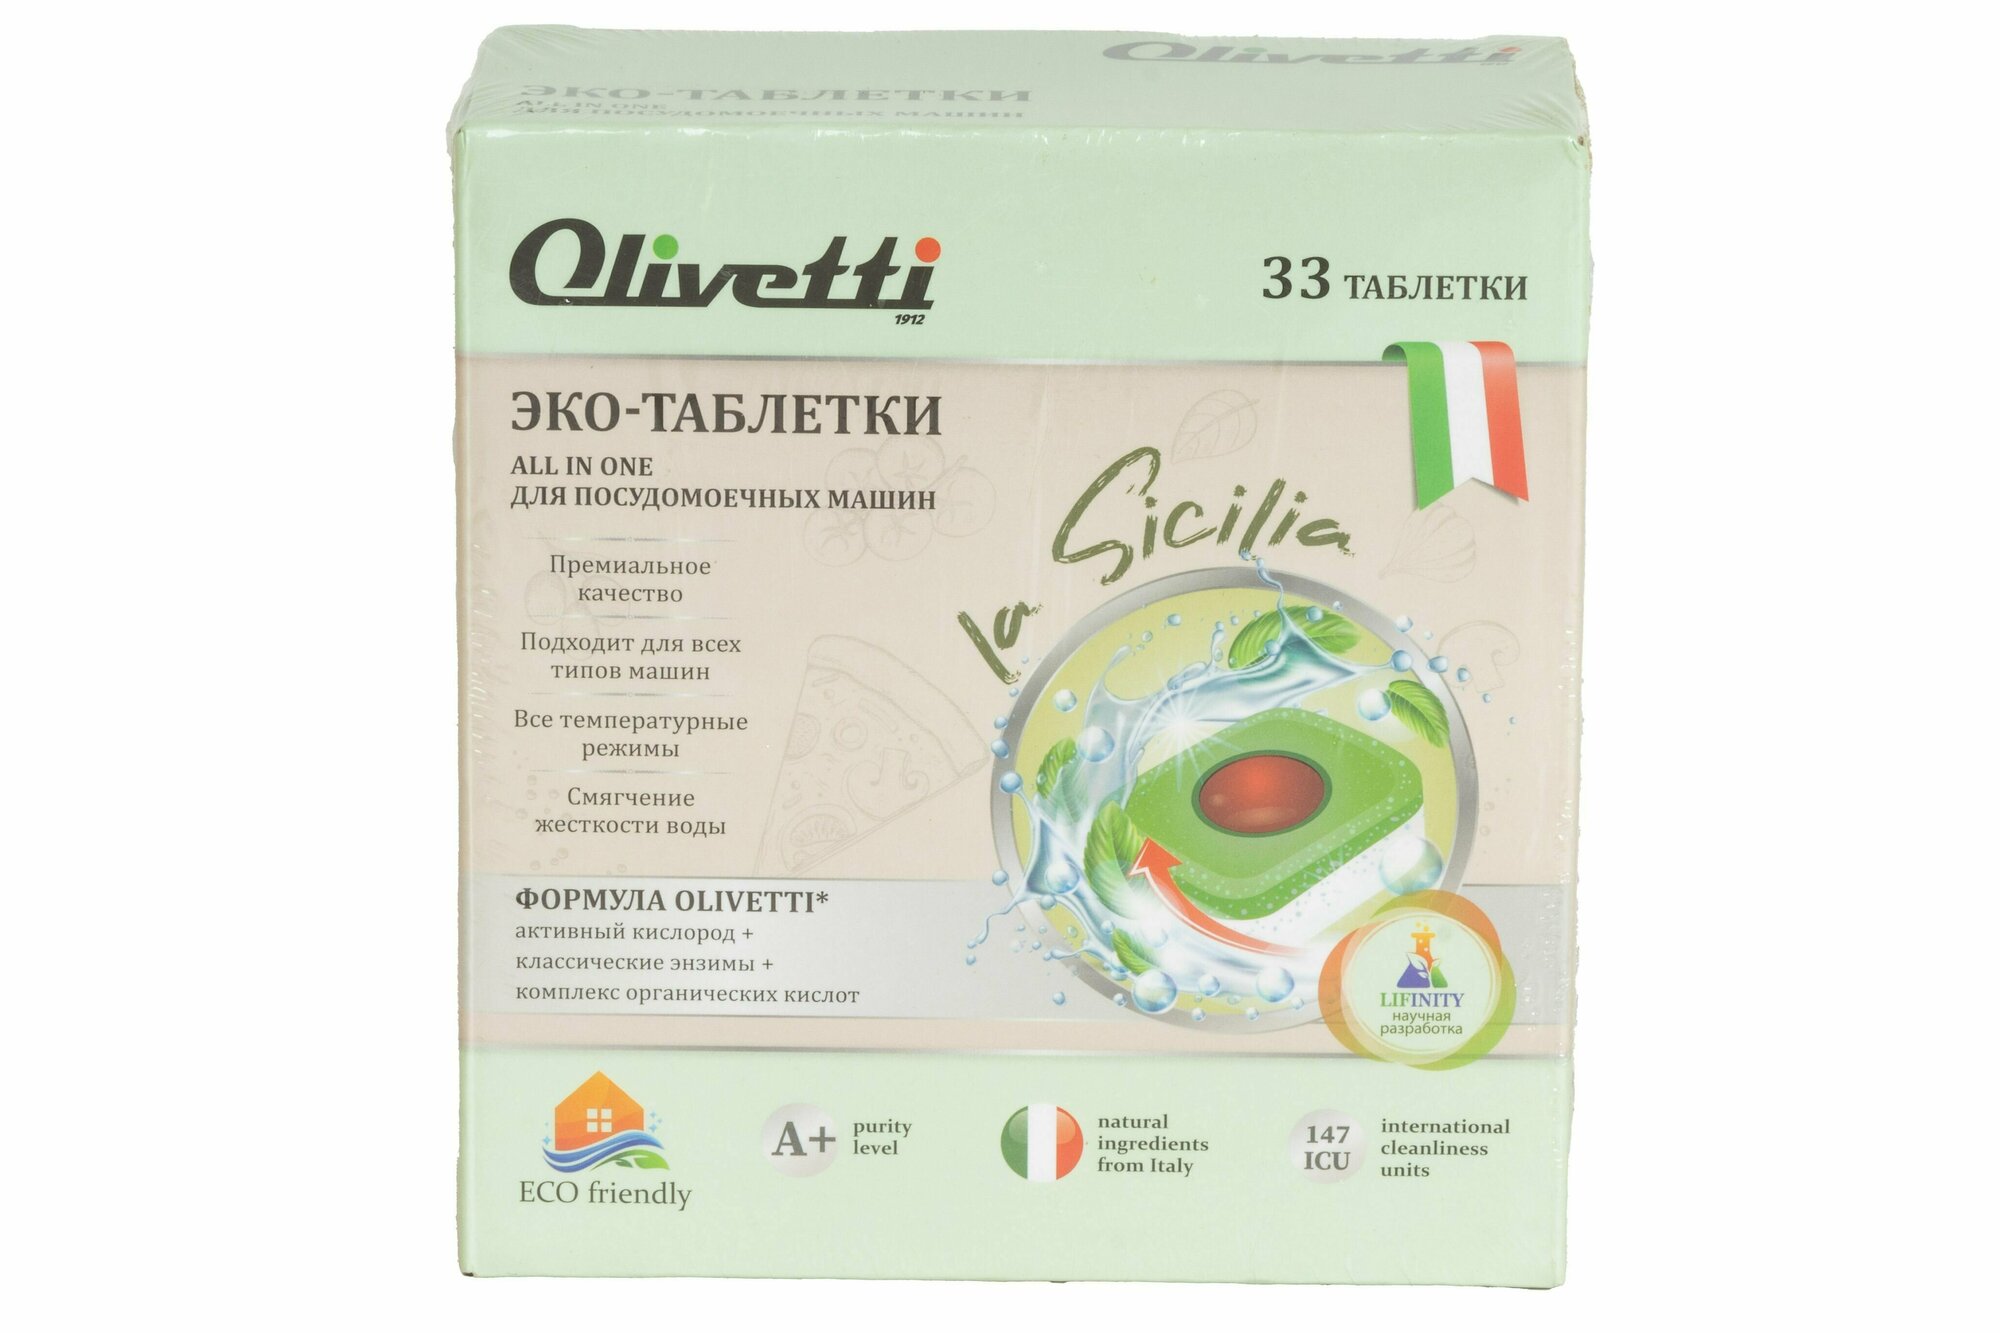 Olivetti Эко-таблетки 3в1 бесфосфатные для посудомоечных машин 33 штуки /премиум качество/ без пятен и разводов натуральные компоненты из Италии